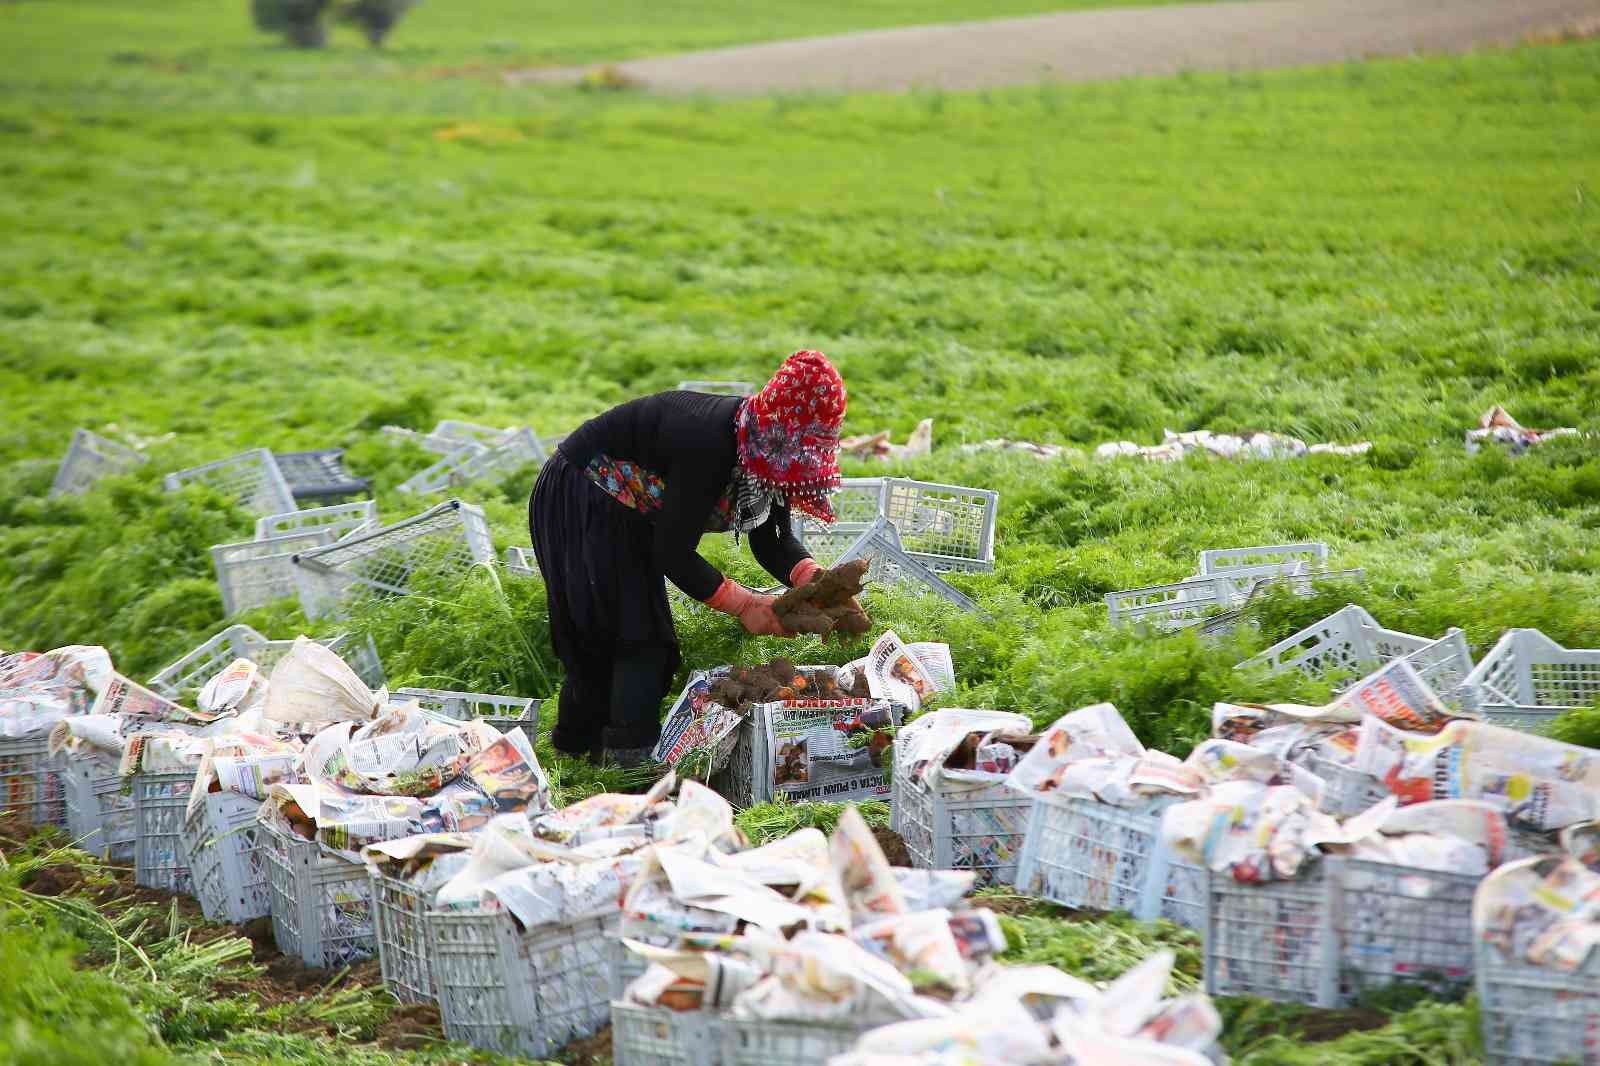 Türkiye’nin sebze ambarı Beypazarı’nda kış havucu hasadı başladı #ankara